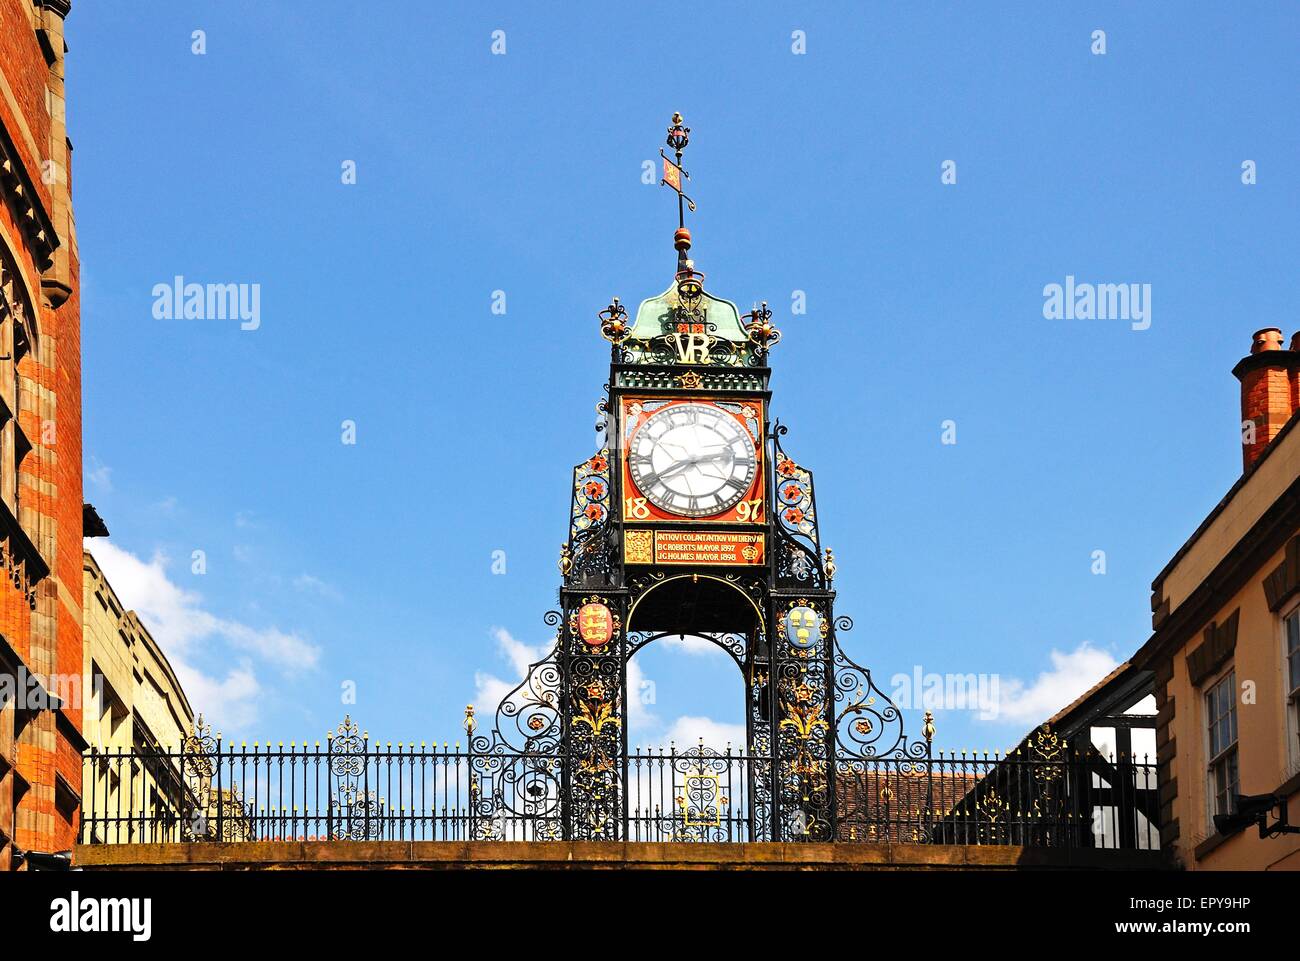 Eastgate Clock qui a été érigée en 1899 pour célébrer le jubilé de diamant de la reine Victoria, Chester, Cheshire, Angleterre, Royaume-Uni. Banque D'Images